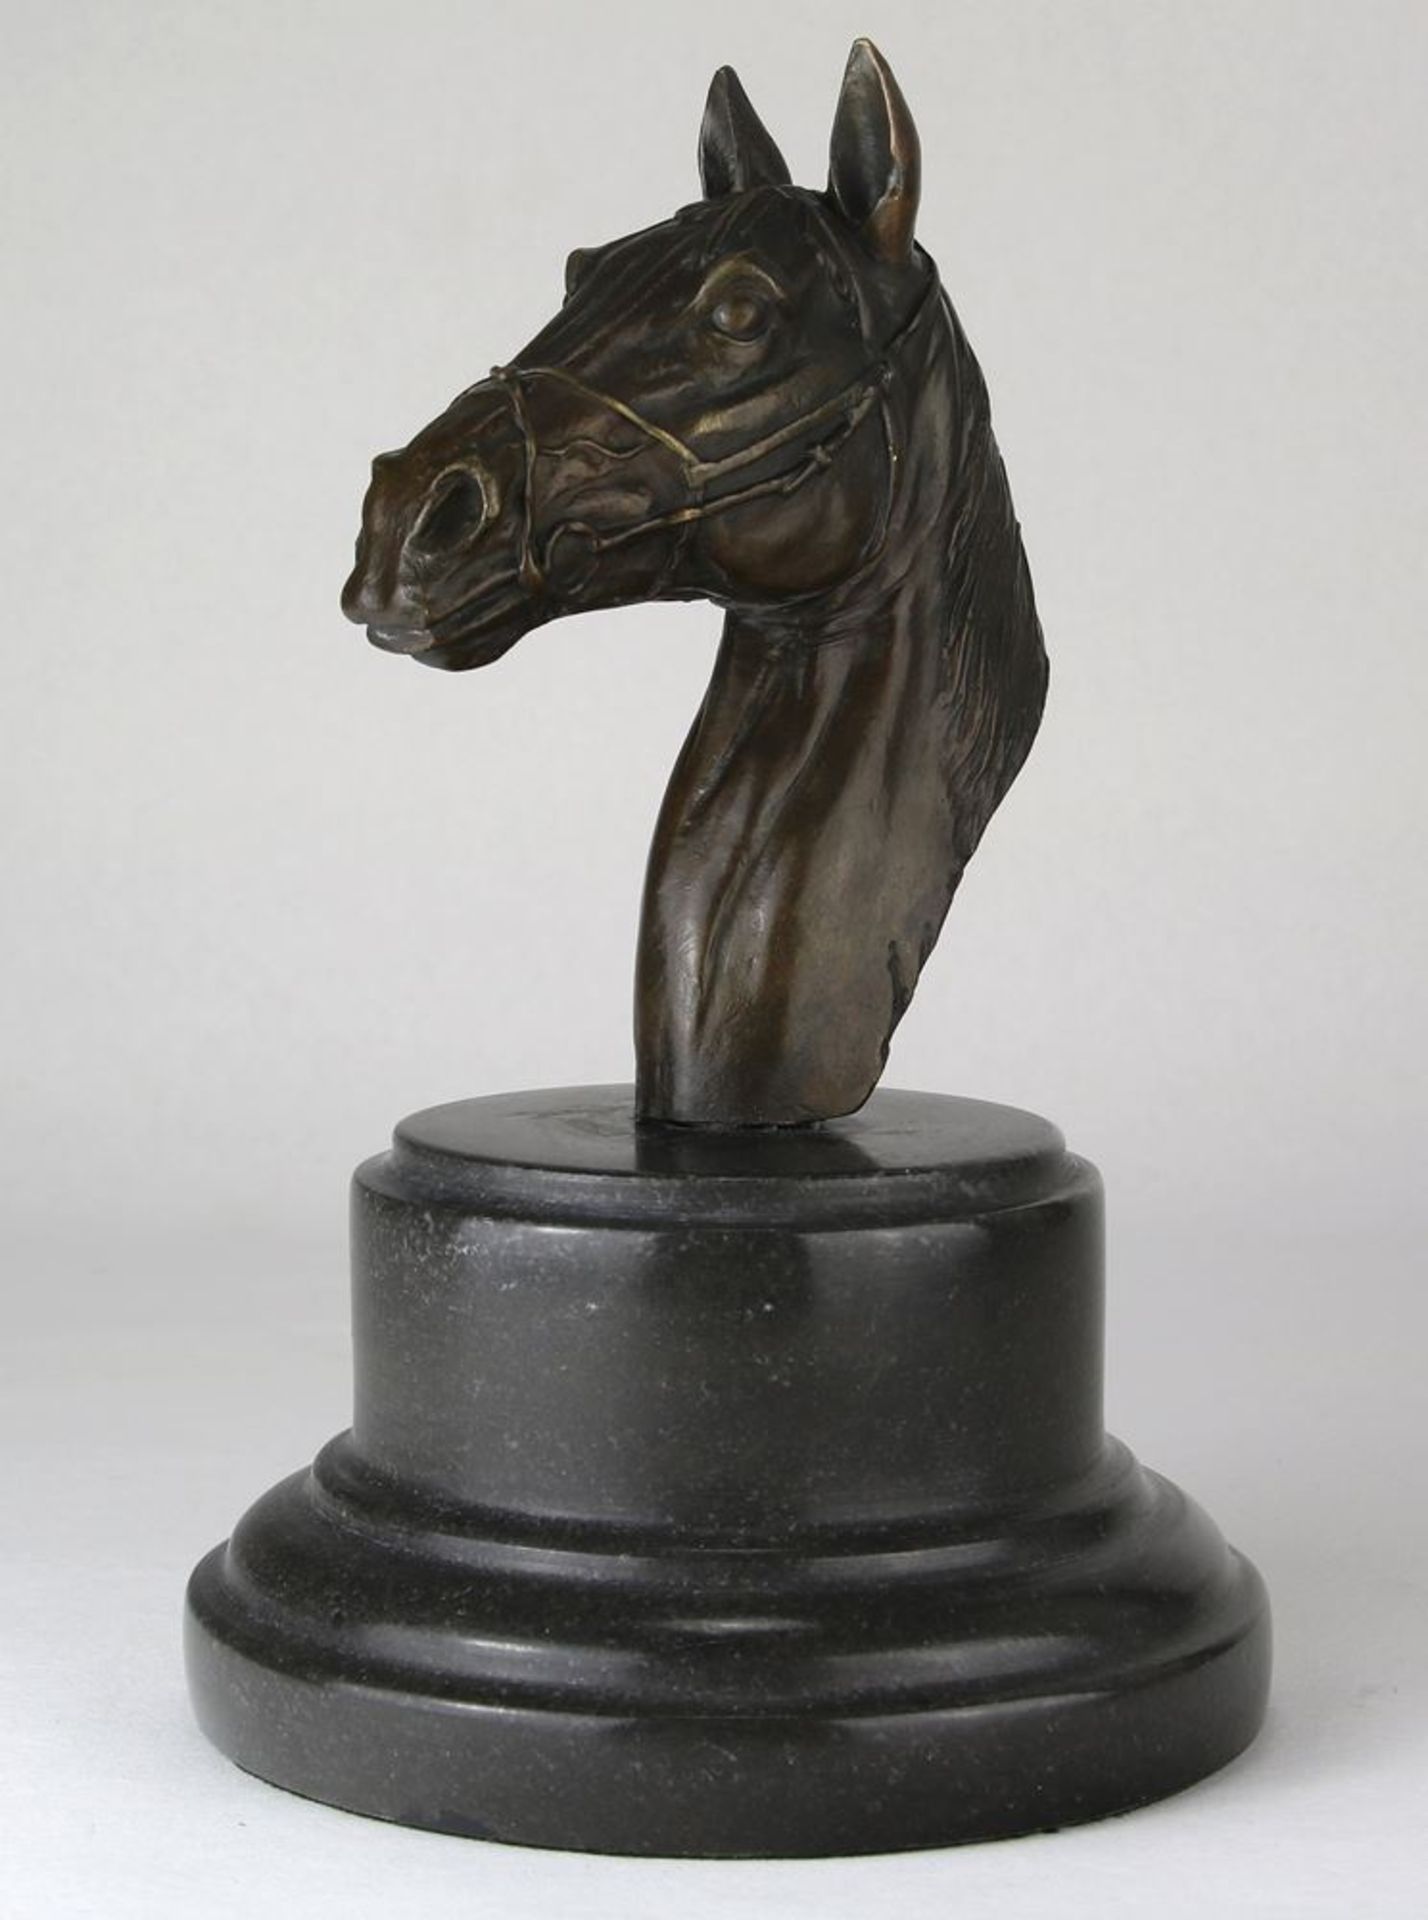 PferdeskulpturBezeichnet Steves. Bronze auf getrepptem Marmorsockel. Naturalistisch gearbeiteter